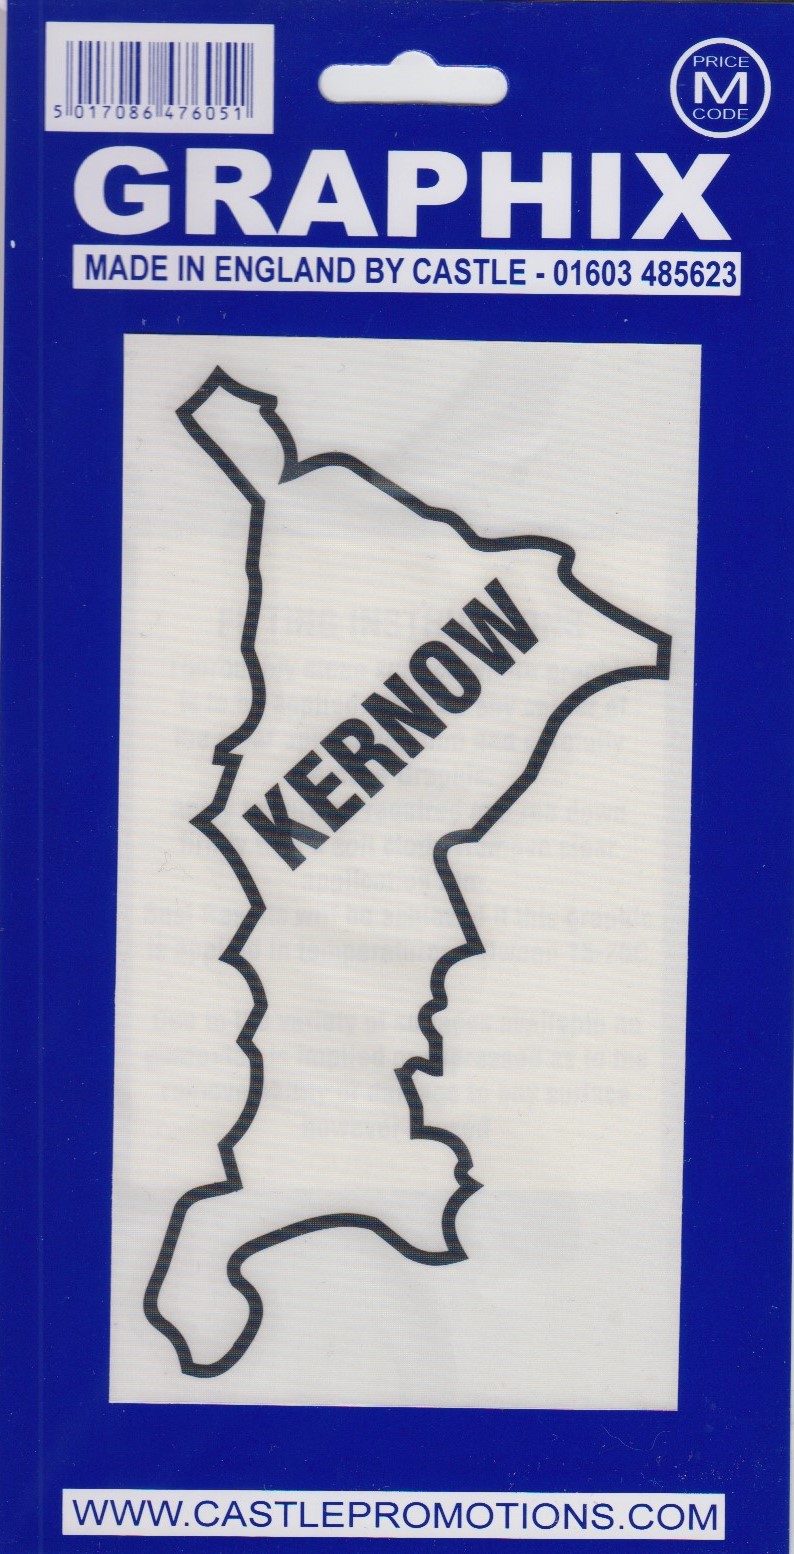 Kernow Graphic